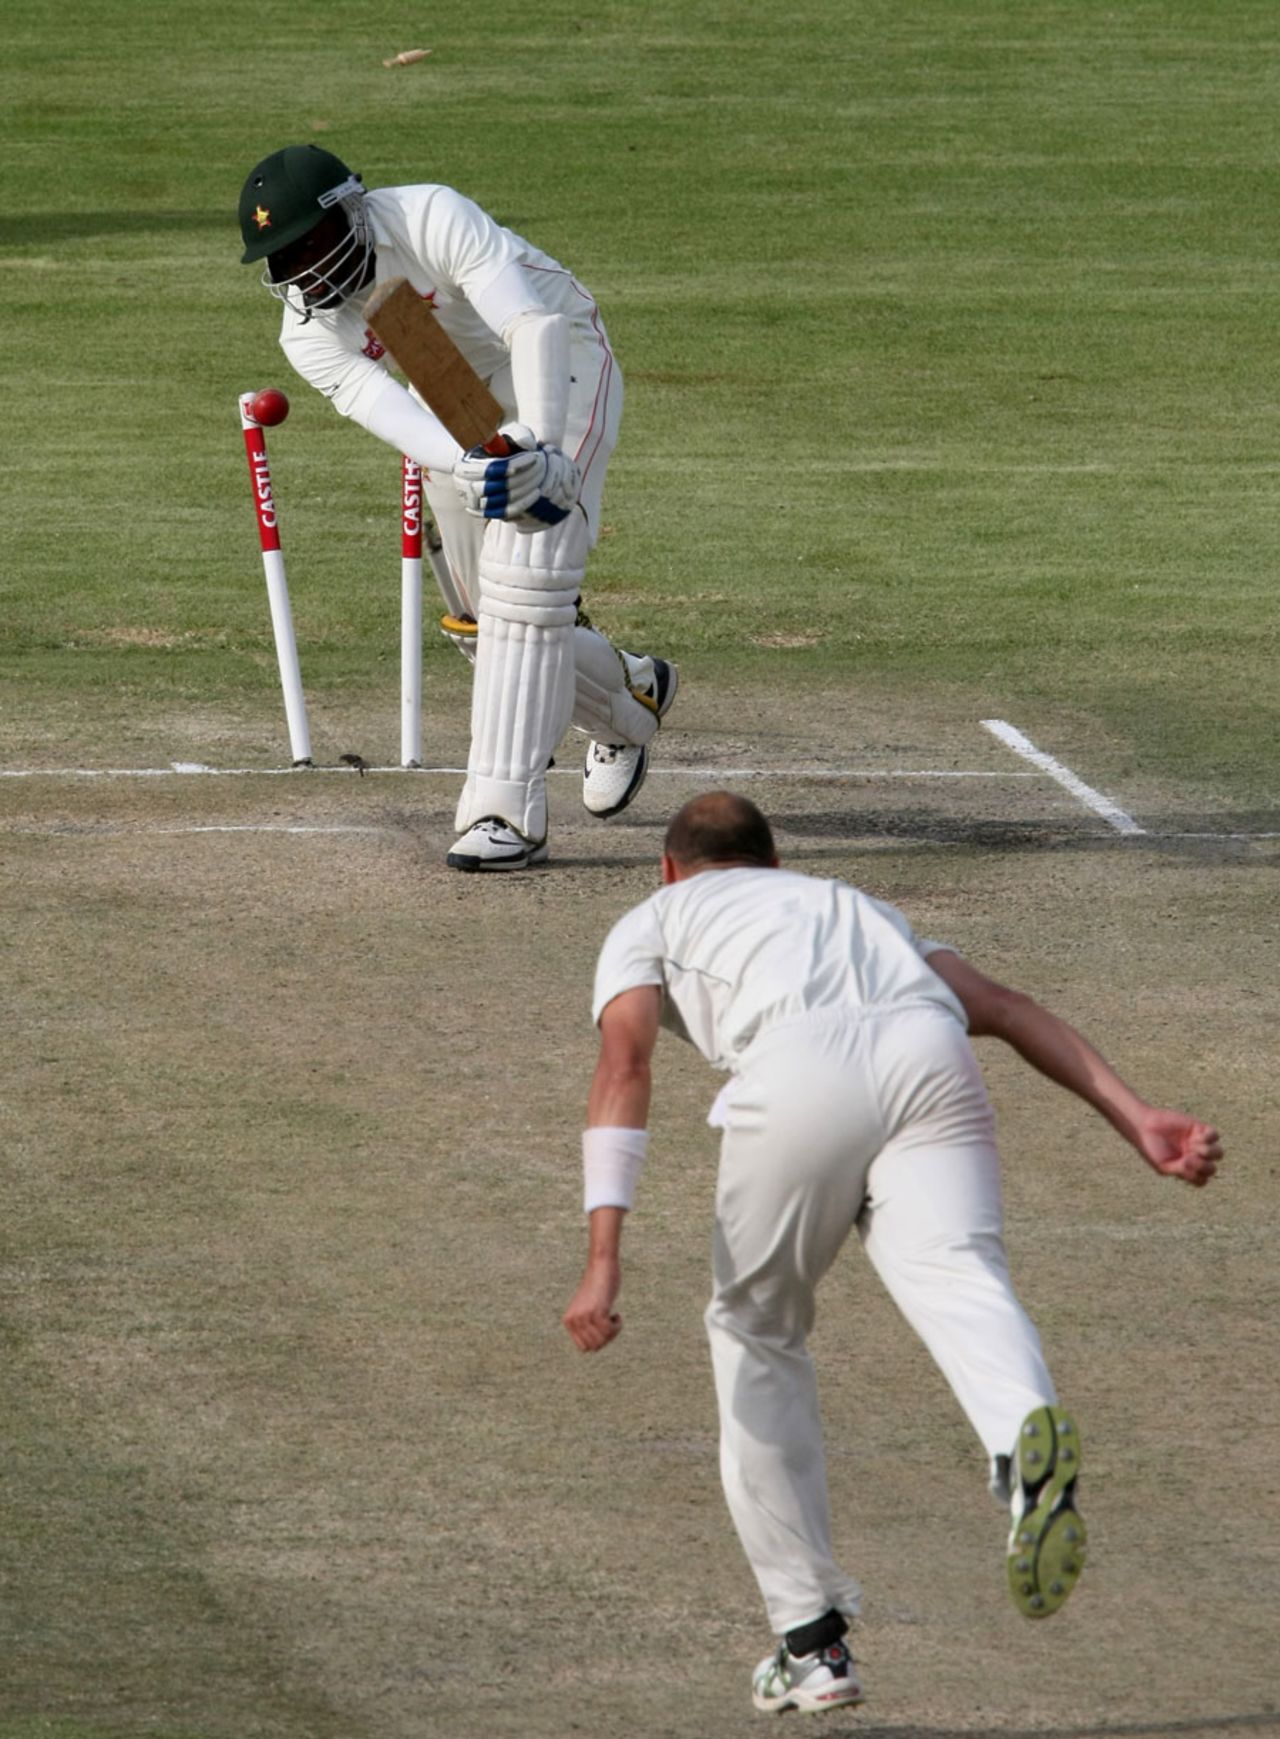 Chris Martin bowls Njabulo Ncube, Zimbabwe v New Zealand, only Test, Bulawayo, 3rd day, November 3, 2011